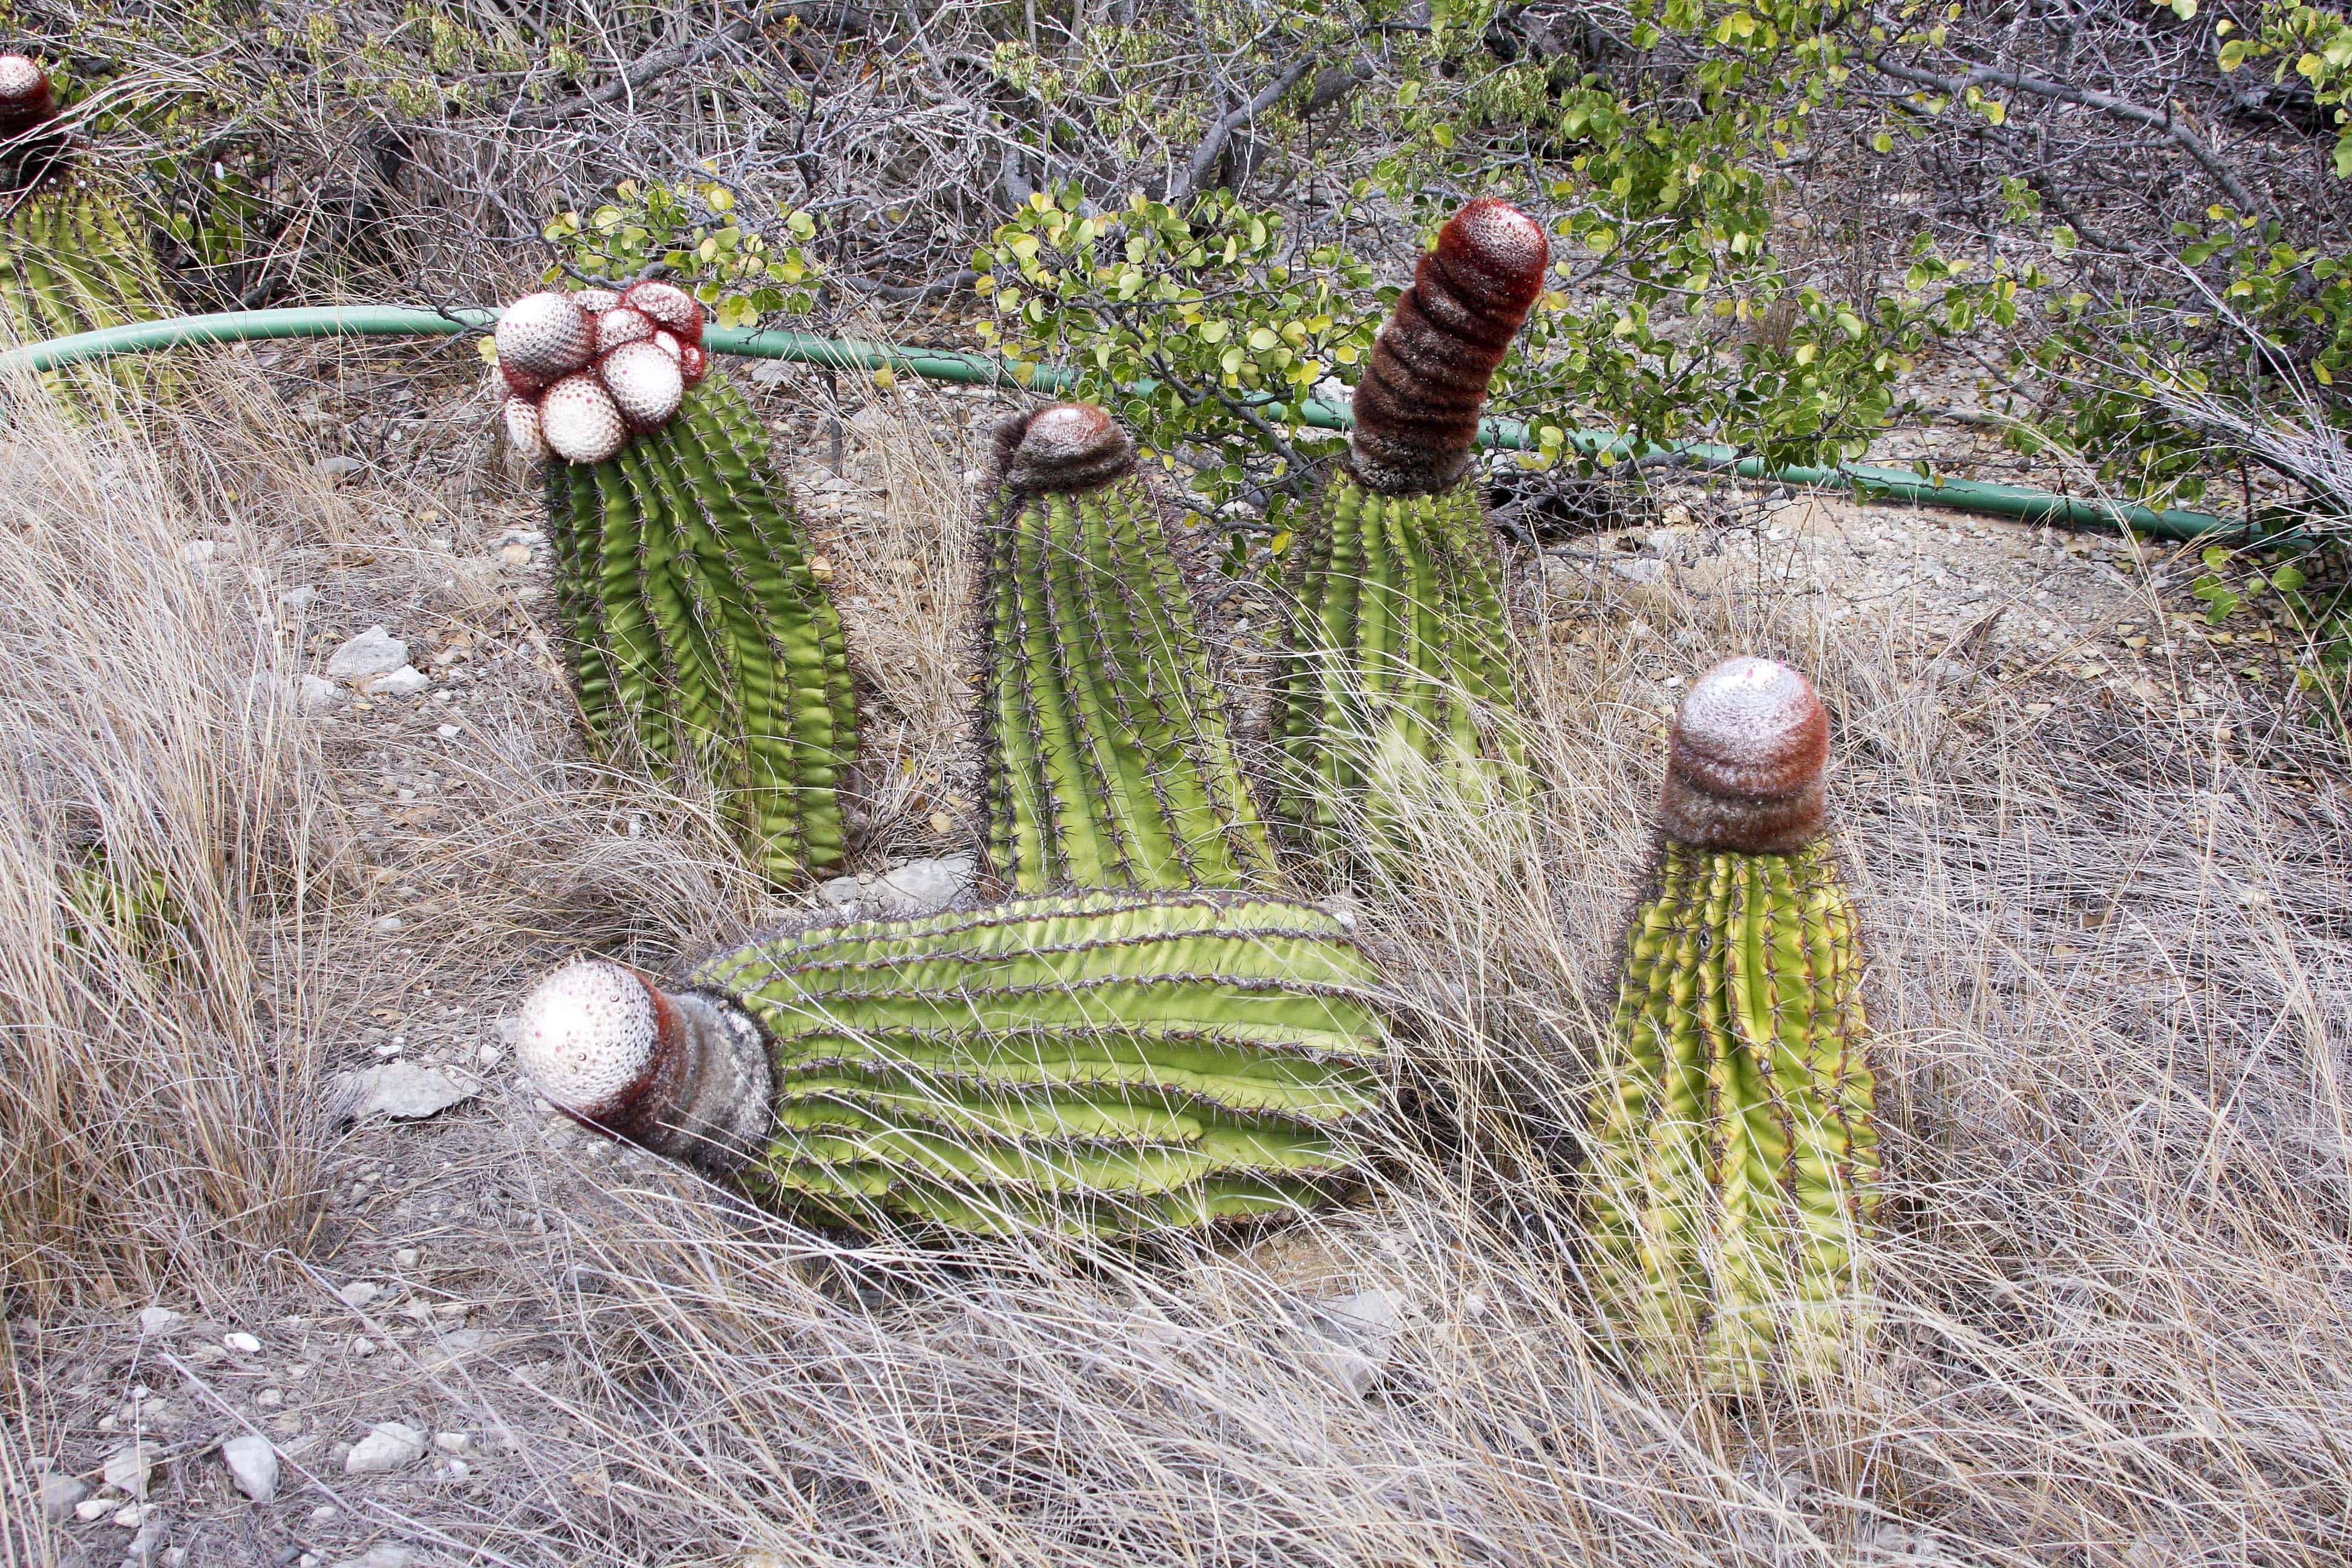 Turks head cacti; Copyright: Dr Mike Pienkowski